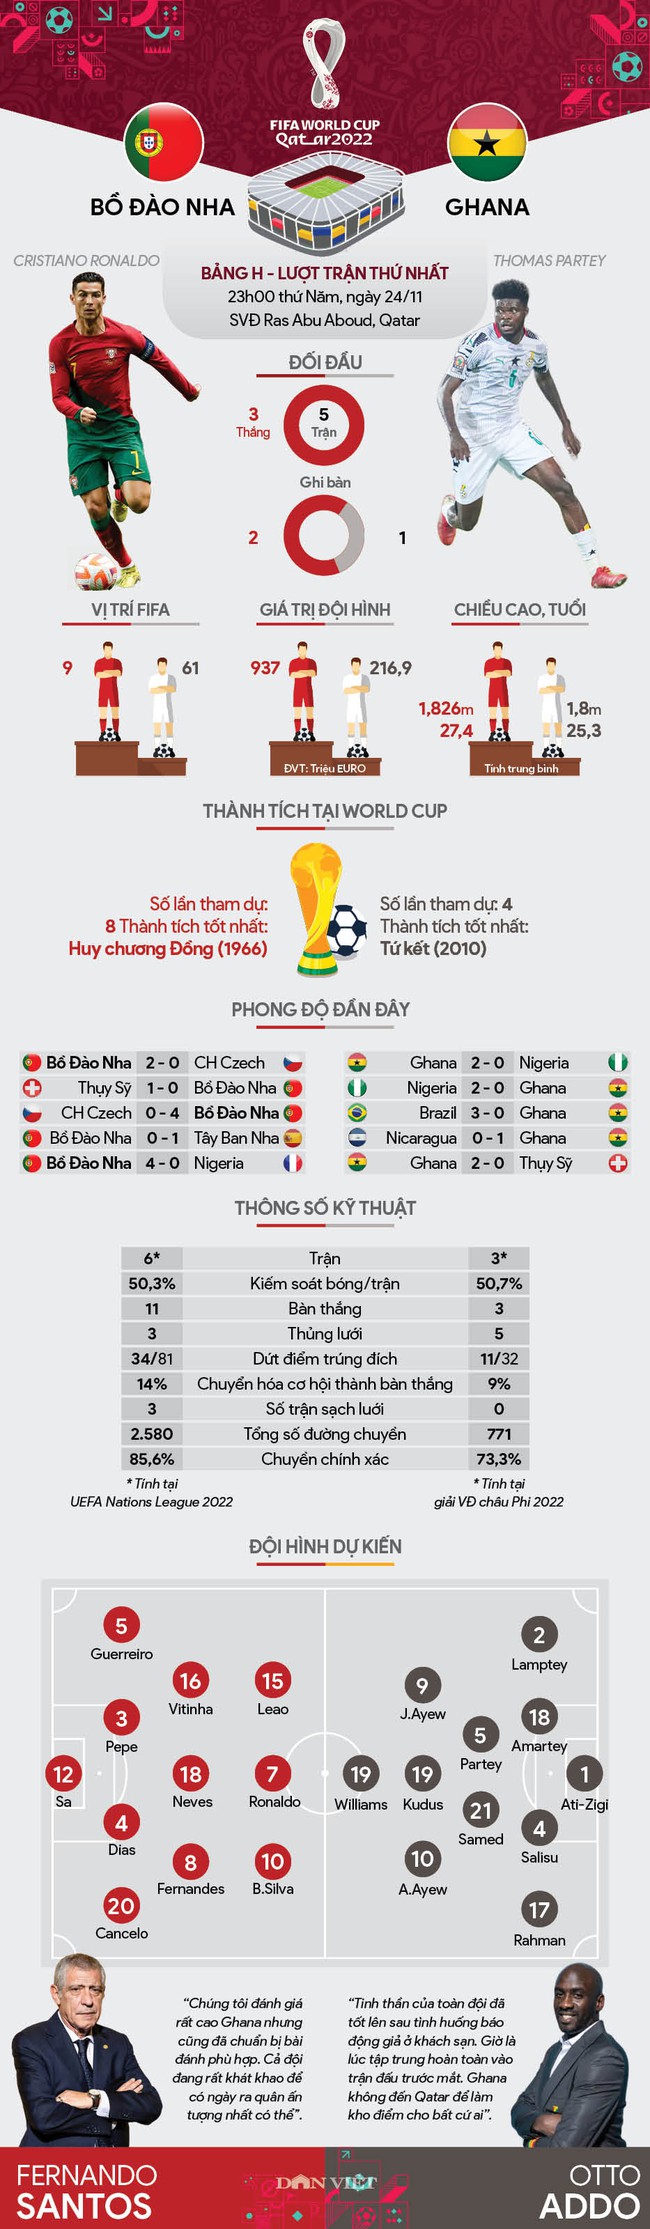 Info thống kê Bồ Đào Nha vs Ghana (23h00 ngày 24/11, bảng H, World Cup 2022): Ronaldo sẽ ghi bàn - Ảnh 1.